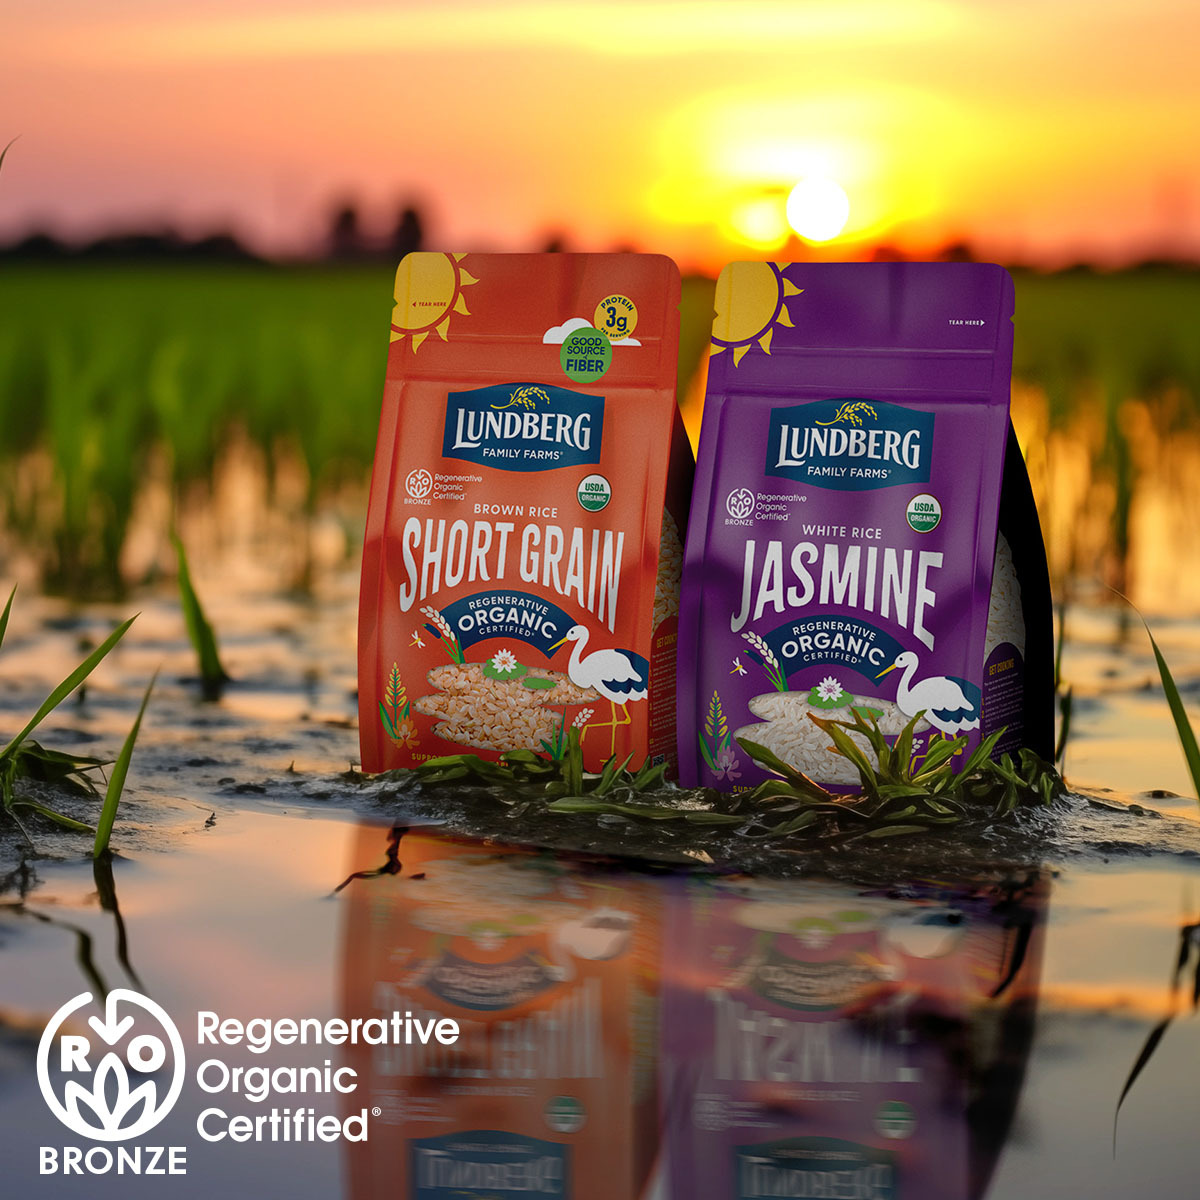 Regenerative Organic Certified rice in a field